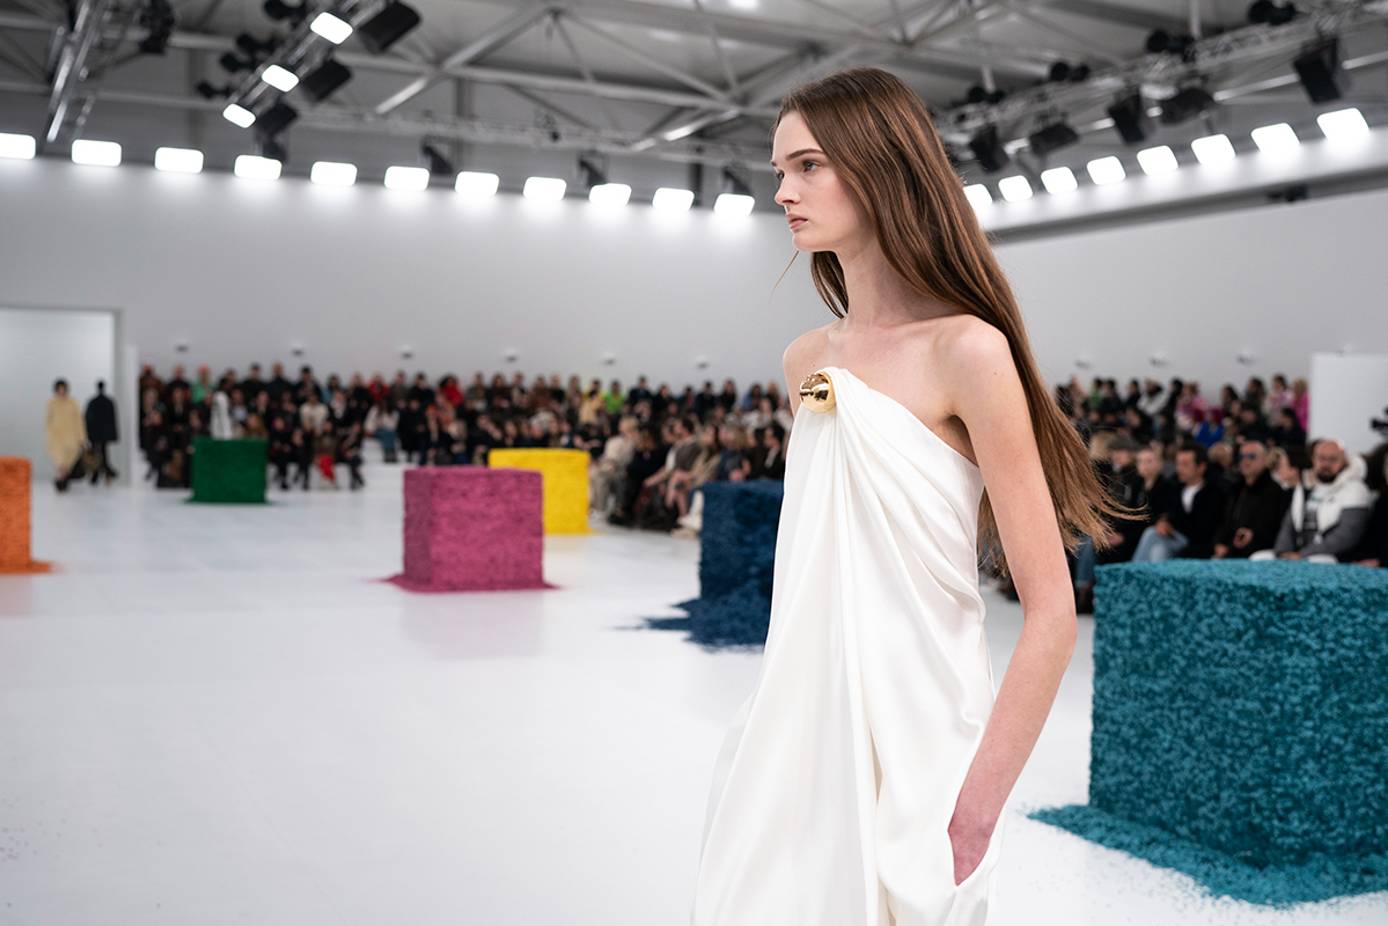 Louis Vuitton ya lo ha confirmado: vuelven los vestidos sobre